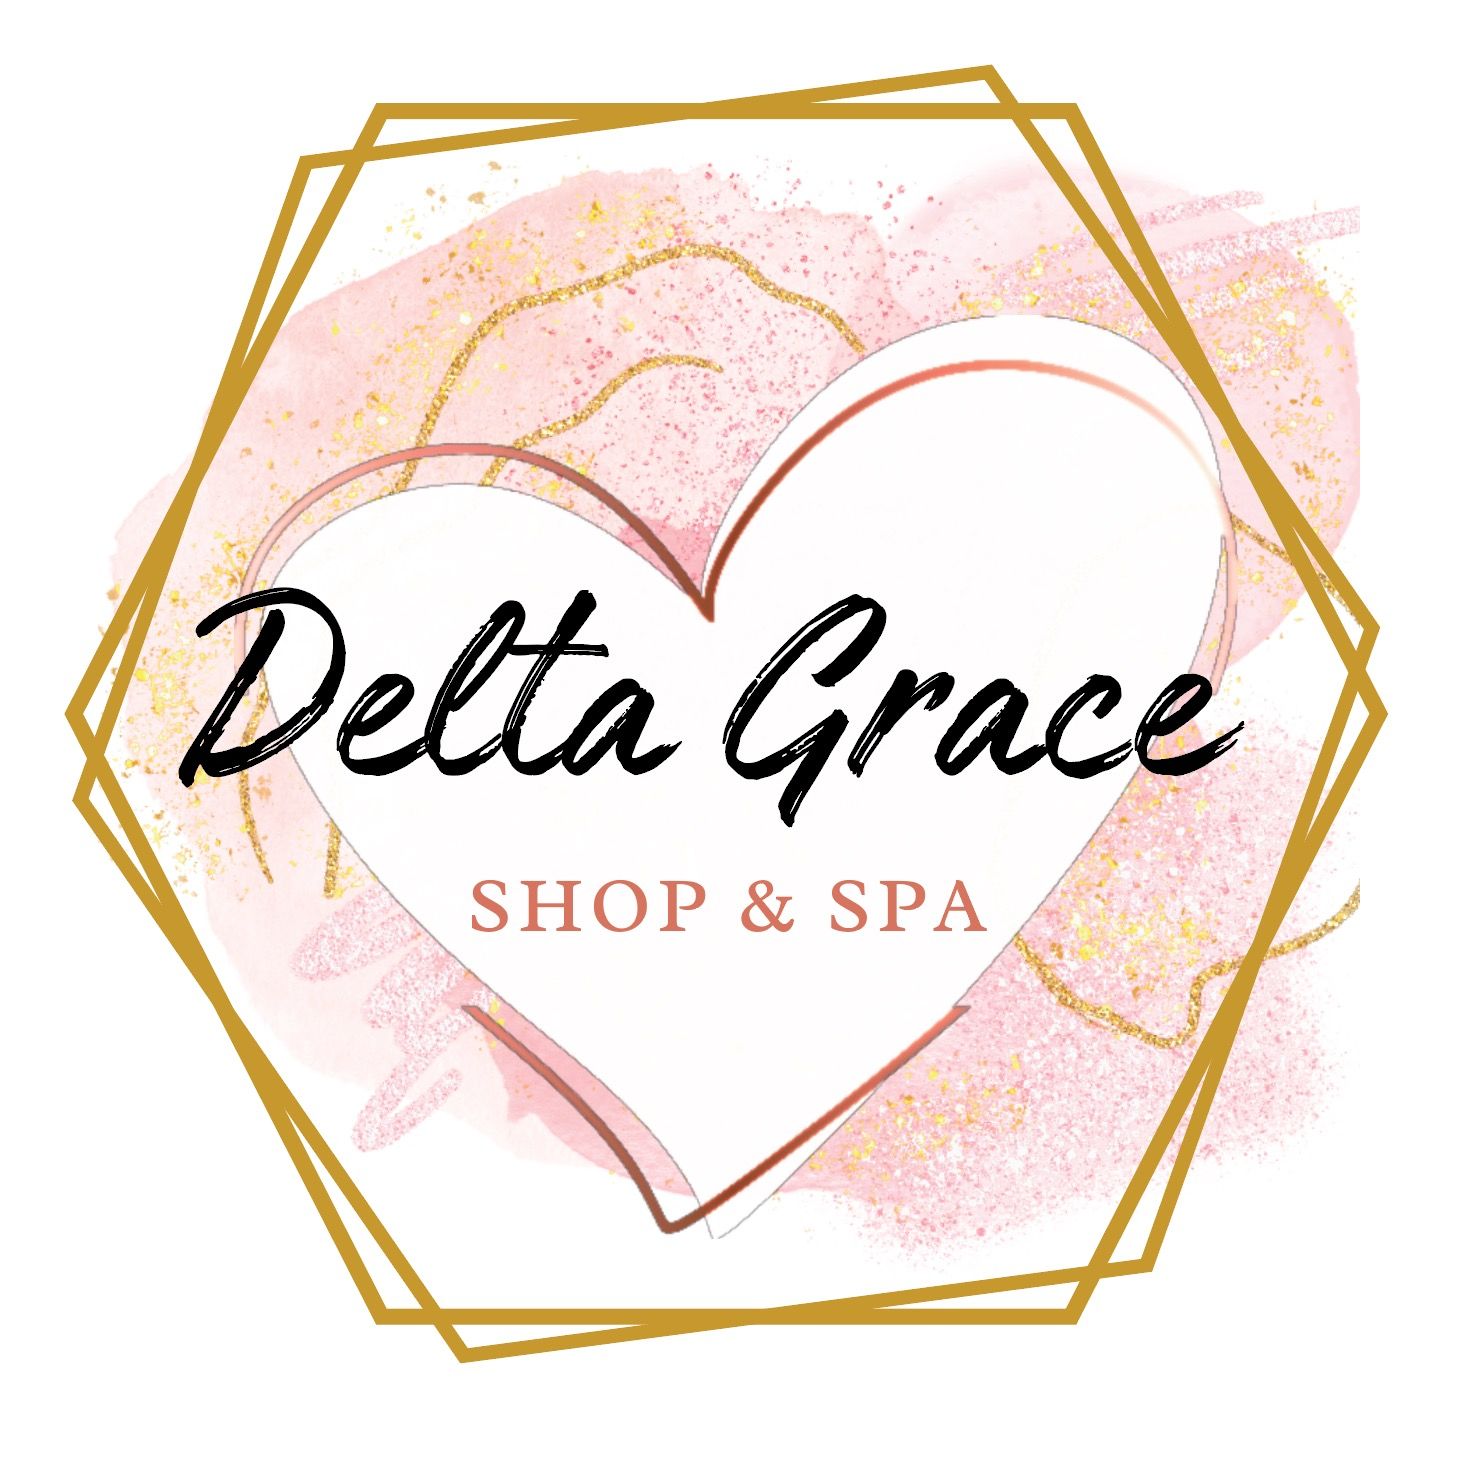 Delta Grace Shop & Spa